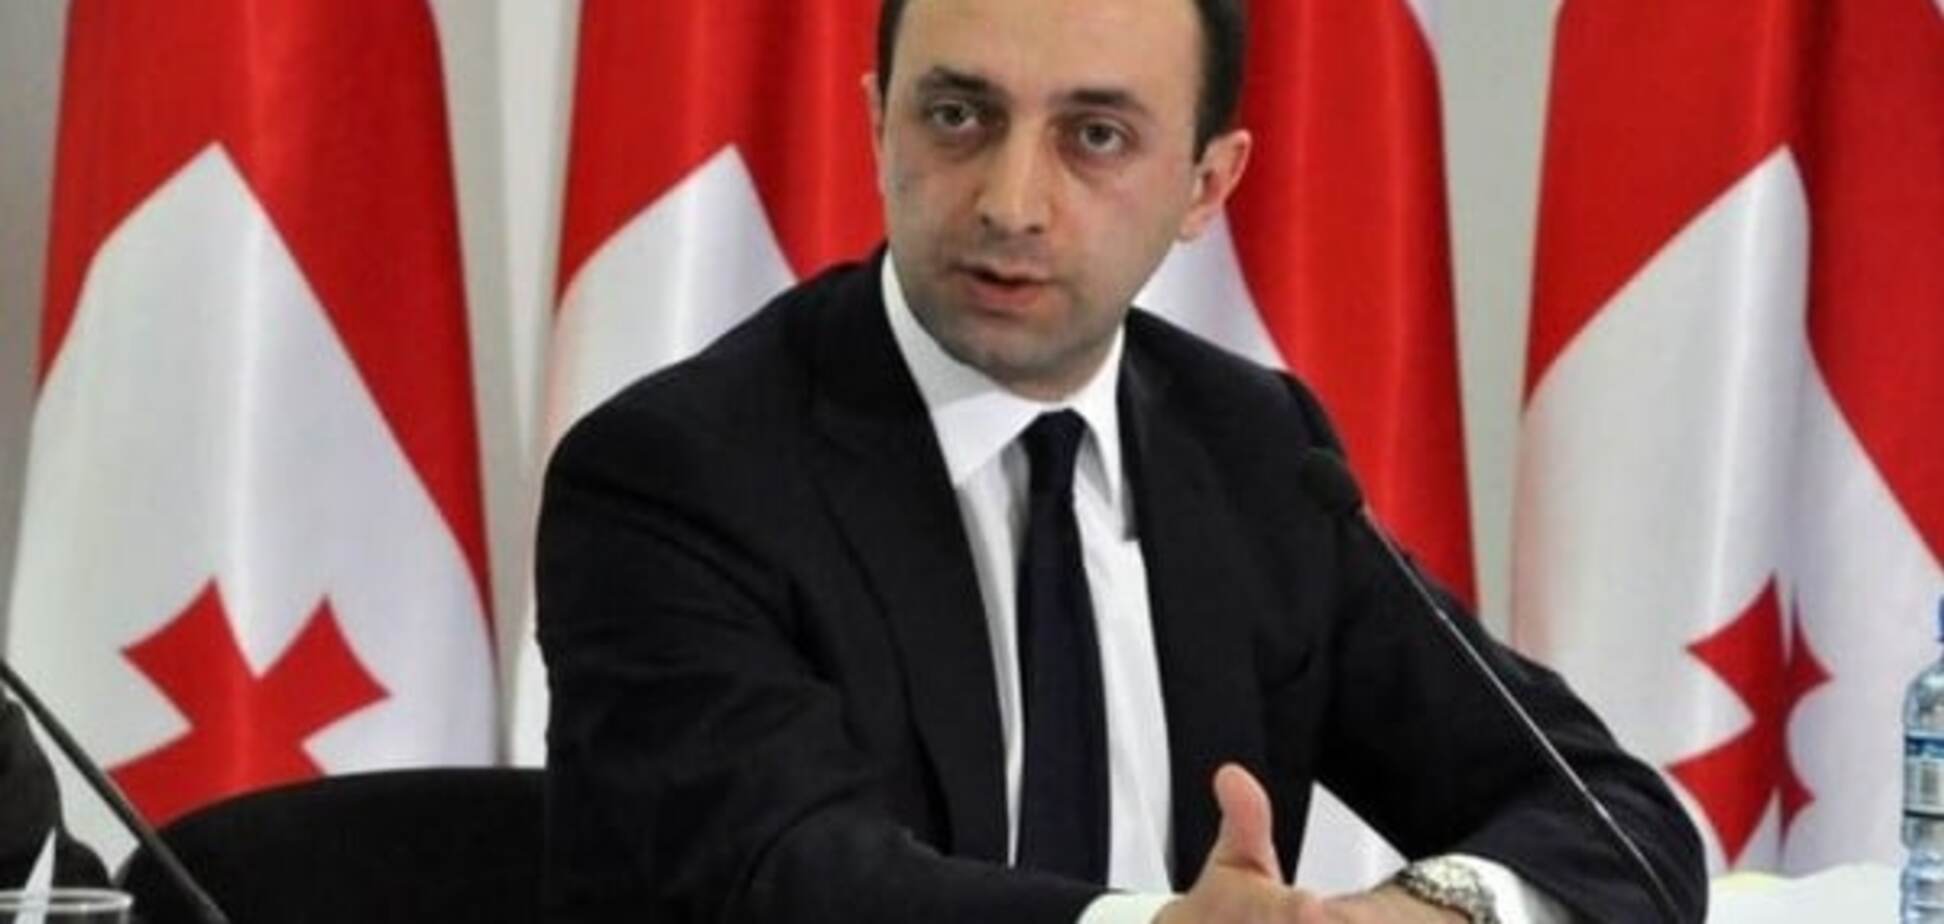 Глава правительства Грузии решил уйти в отставку